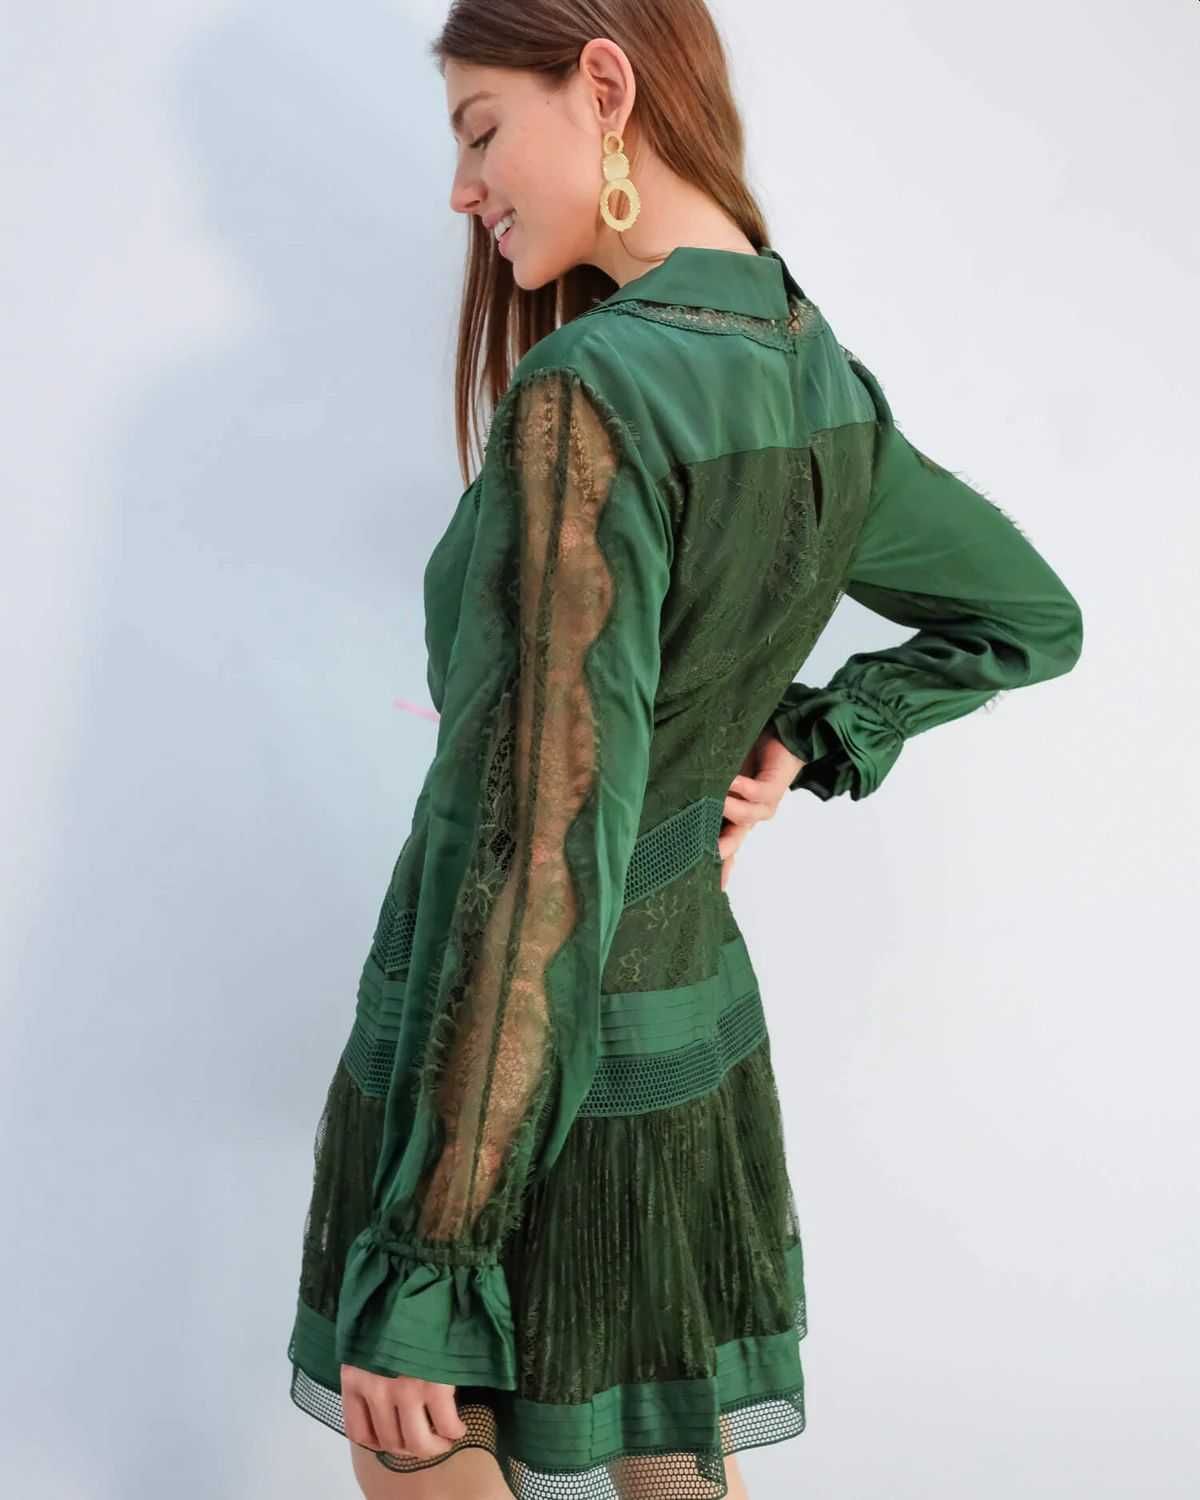 SELF-PORTRAIT green lace trim mini dress